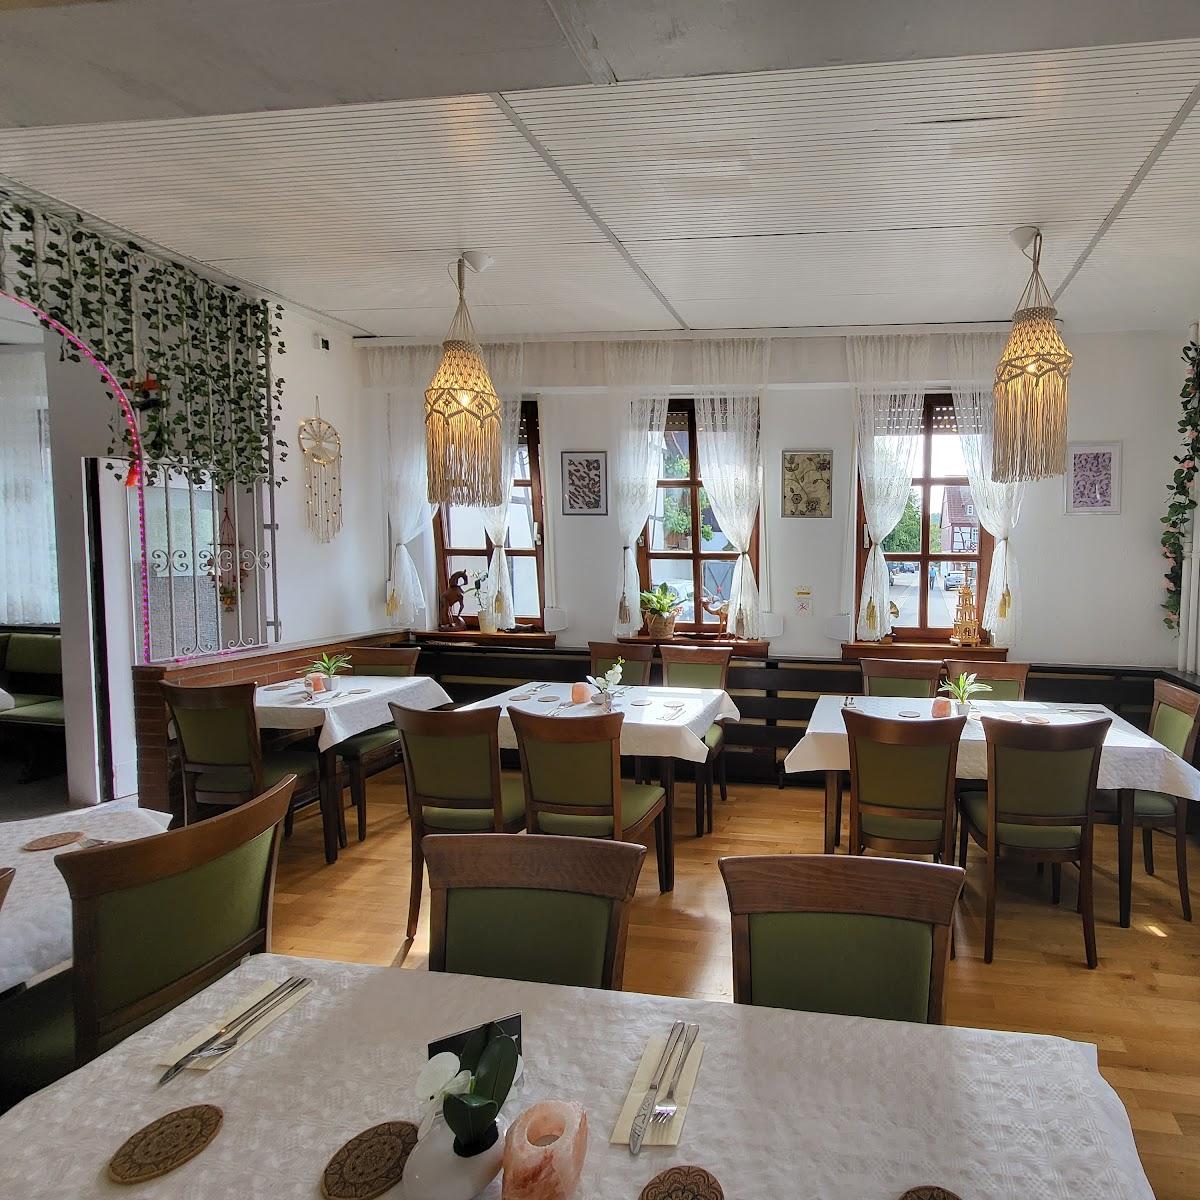 Restaurant "Hayat Indisches Restaurant" in Mörlenbach